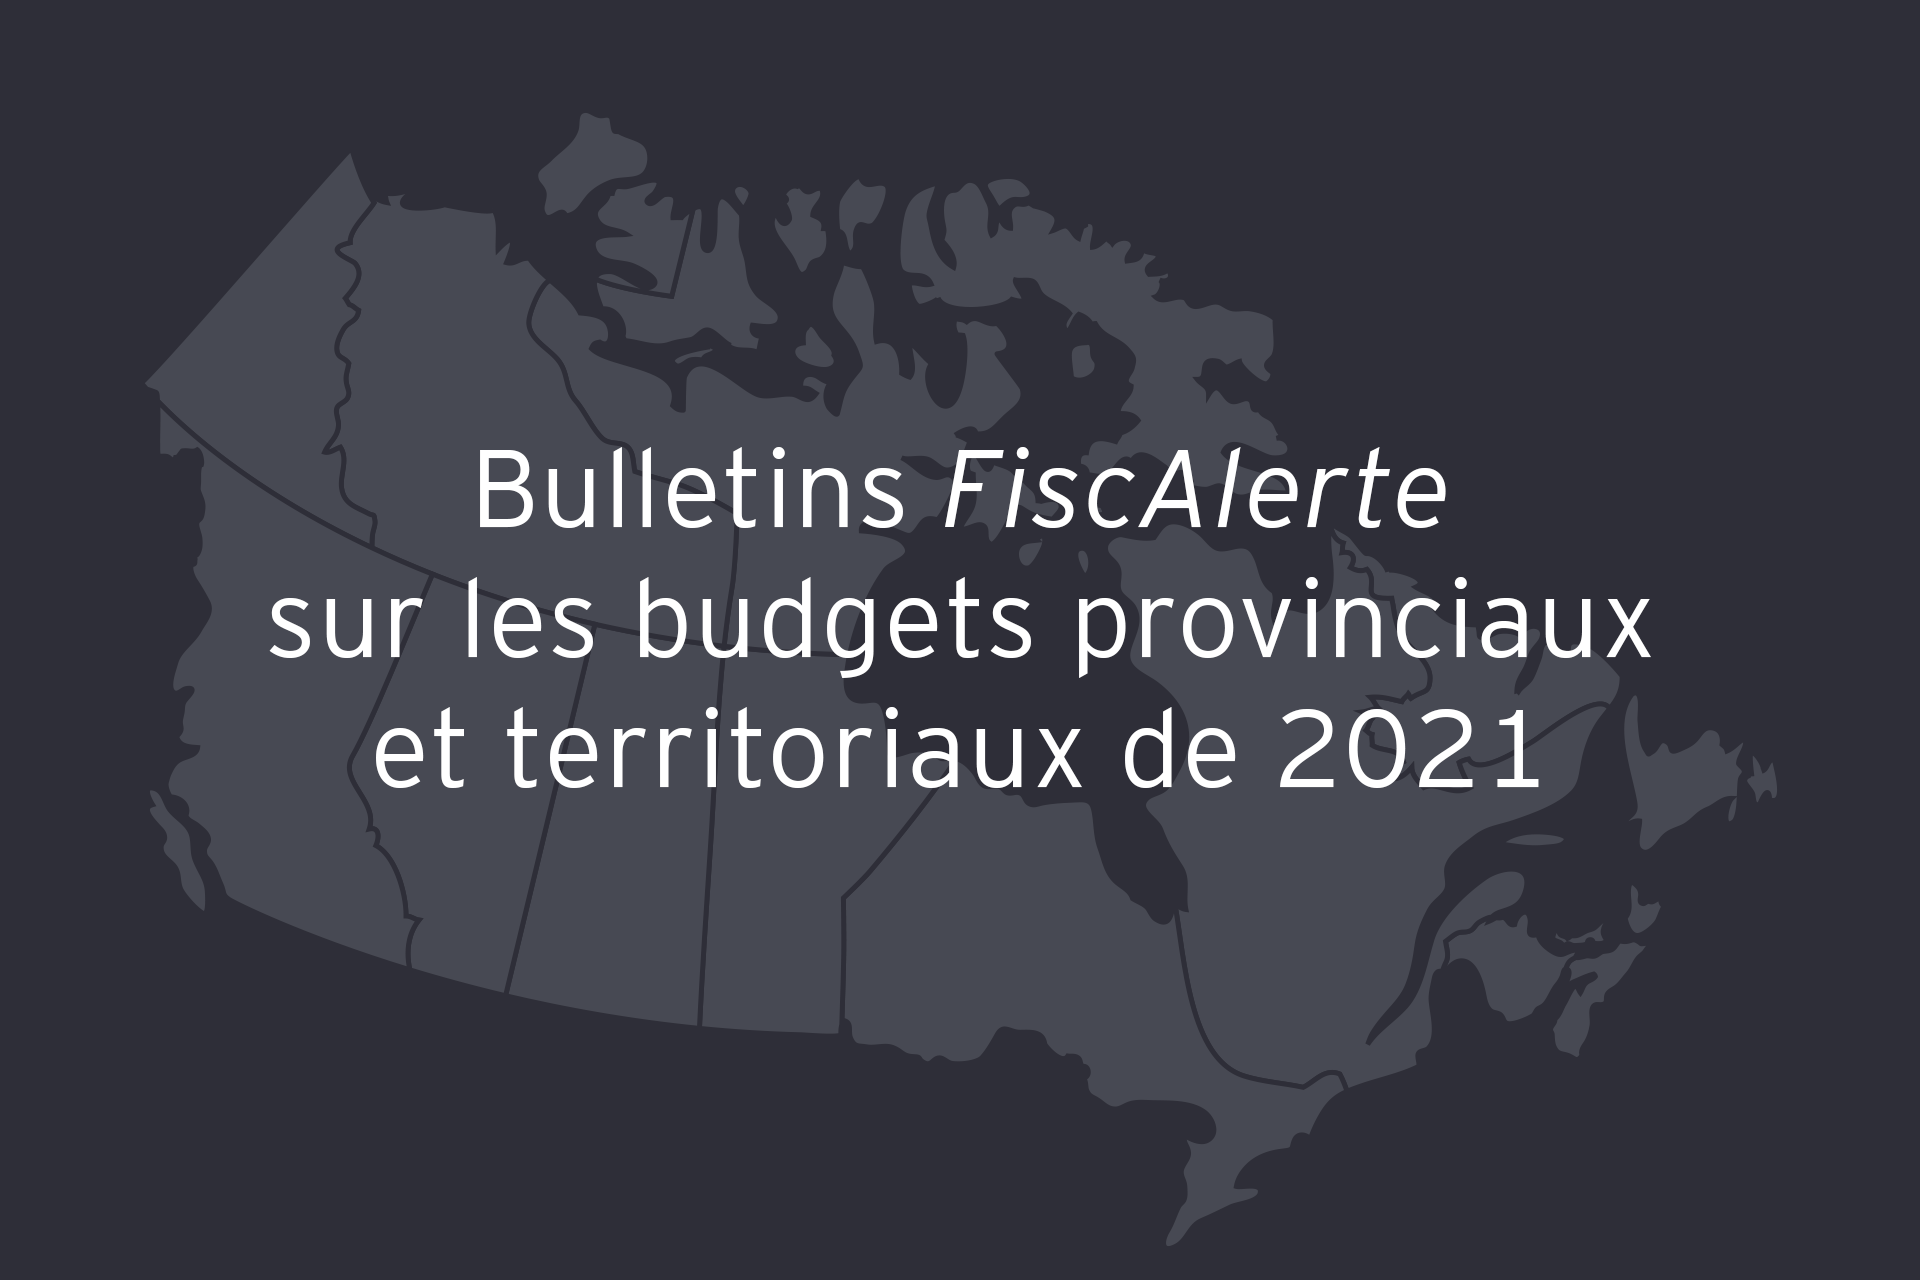 Bulletins FiscAlerte sur les budgets provinciaux et territoriaux de 2021